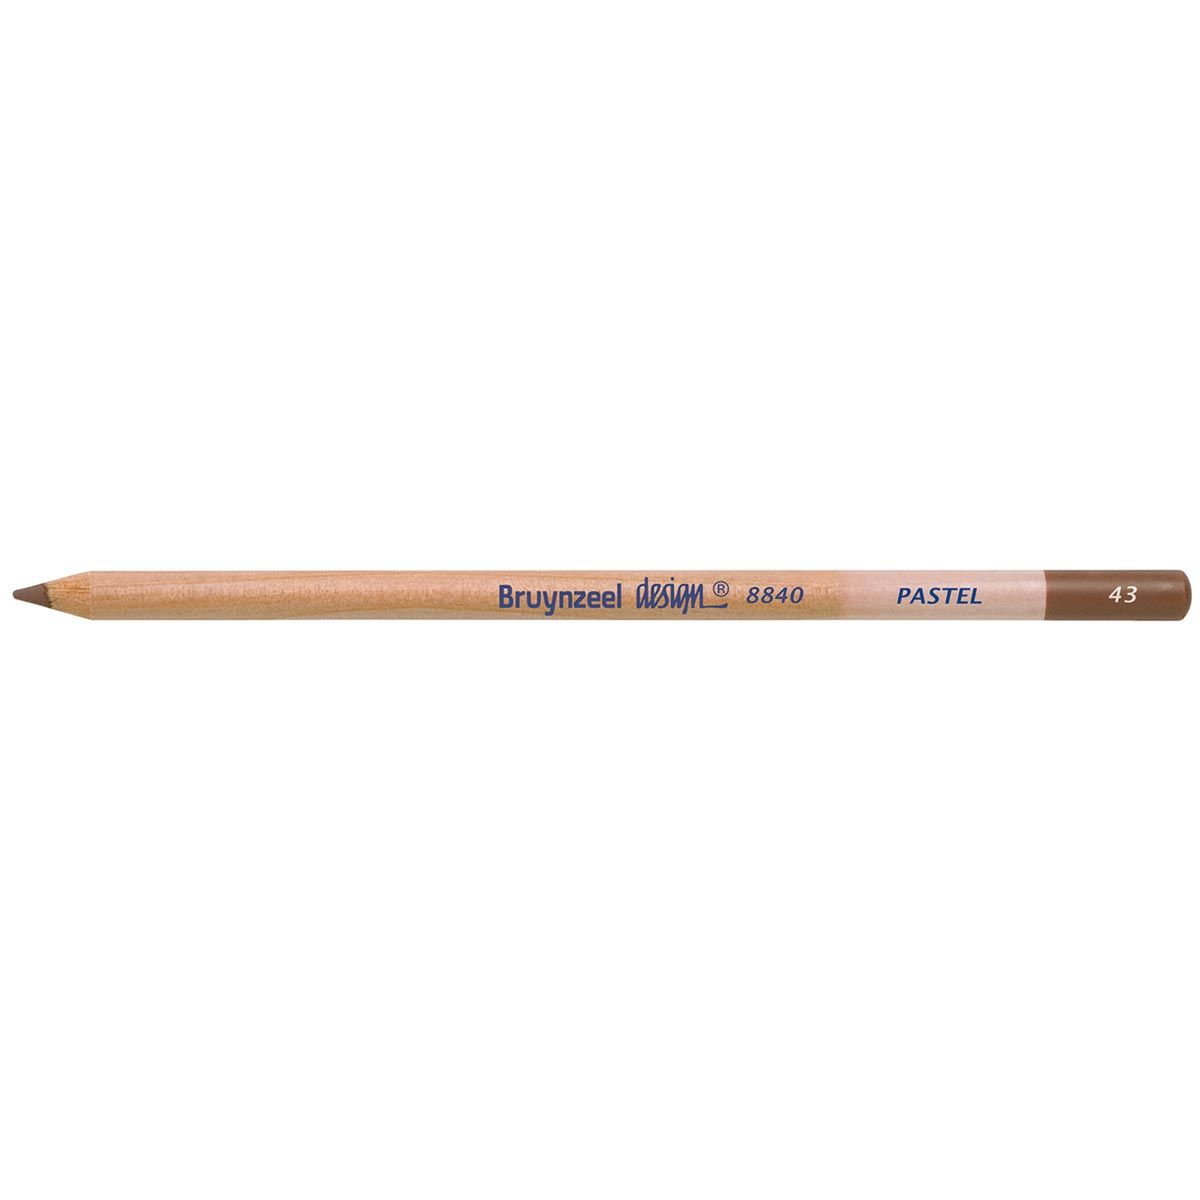 Bruynzeel Design Pastel Pencil - Dark Brown 43